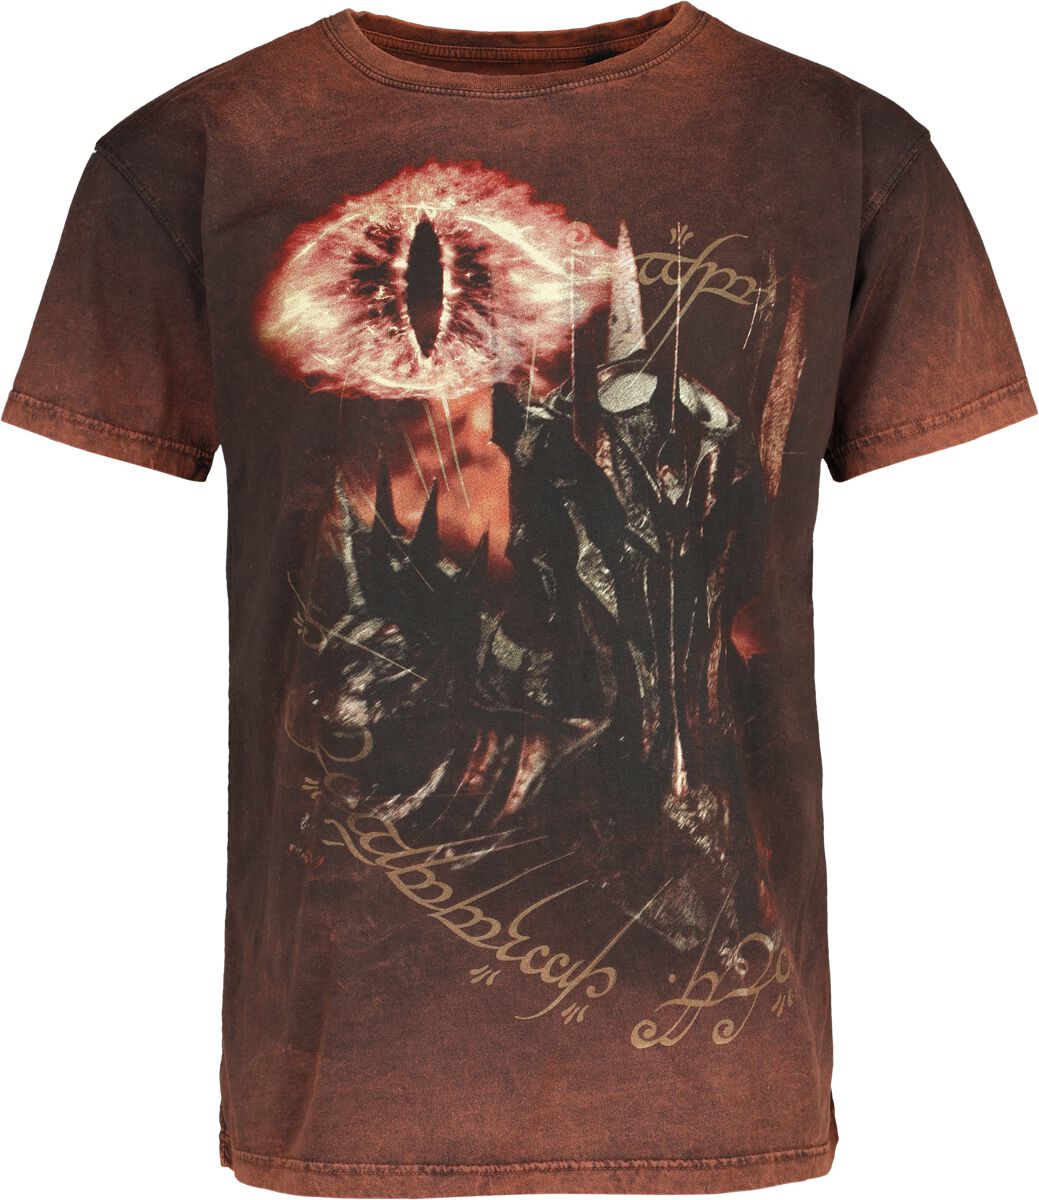 Der Herr der Ringe T-Shirt - Sauron - Eye Of Fire - S bis XXL - für Männer - Größe S - multicolor  - EMP exklusives Merchandise!